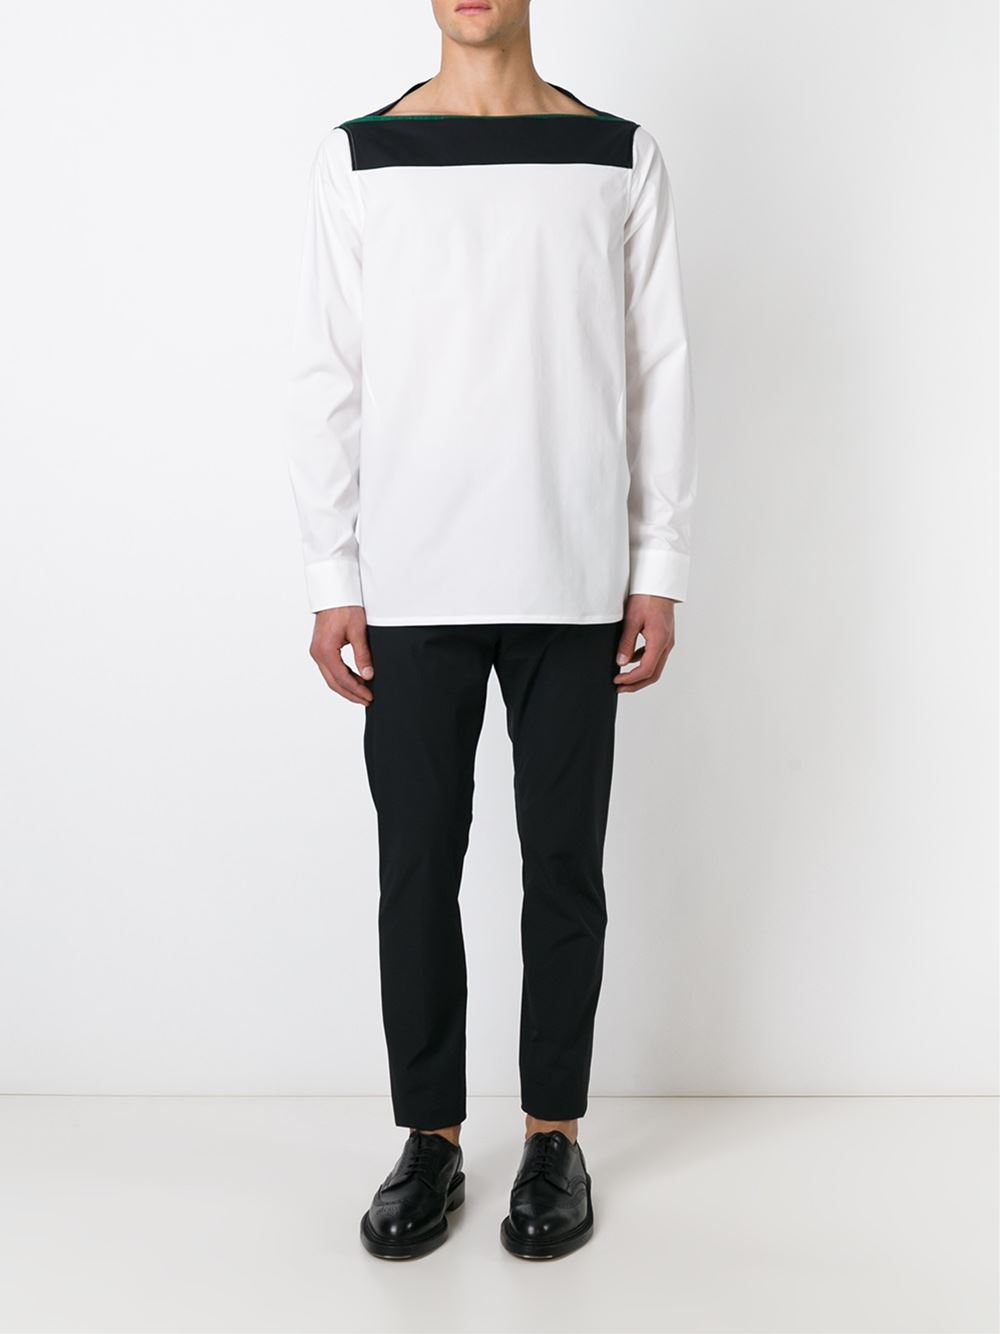 Lyst - Raf simons Long Sleeve Buttonless Shirt in White for Men